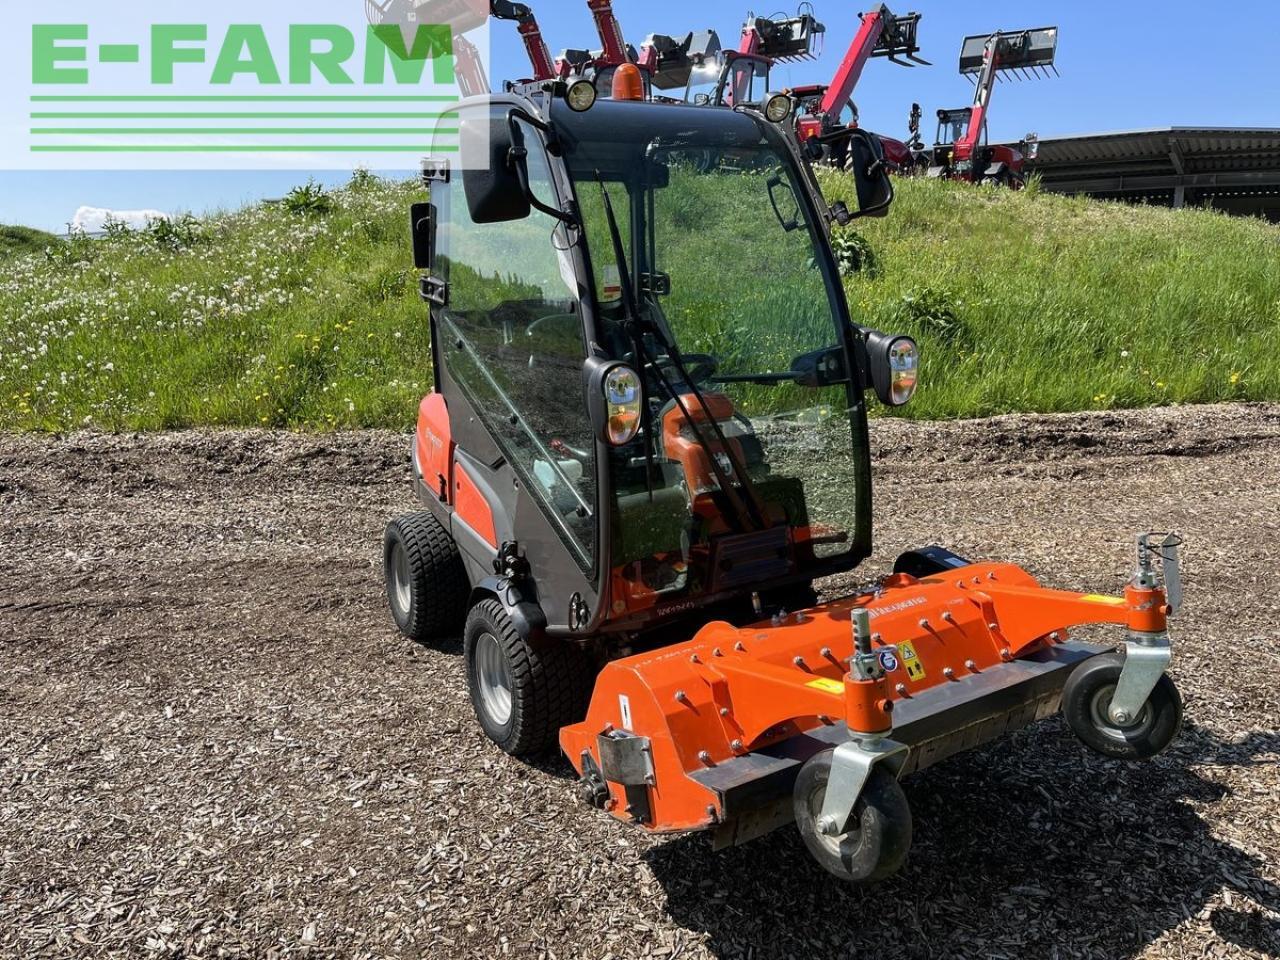 Farm tractor Husqvarna p525 d mit kabine und schleglmäher: picture 3